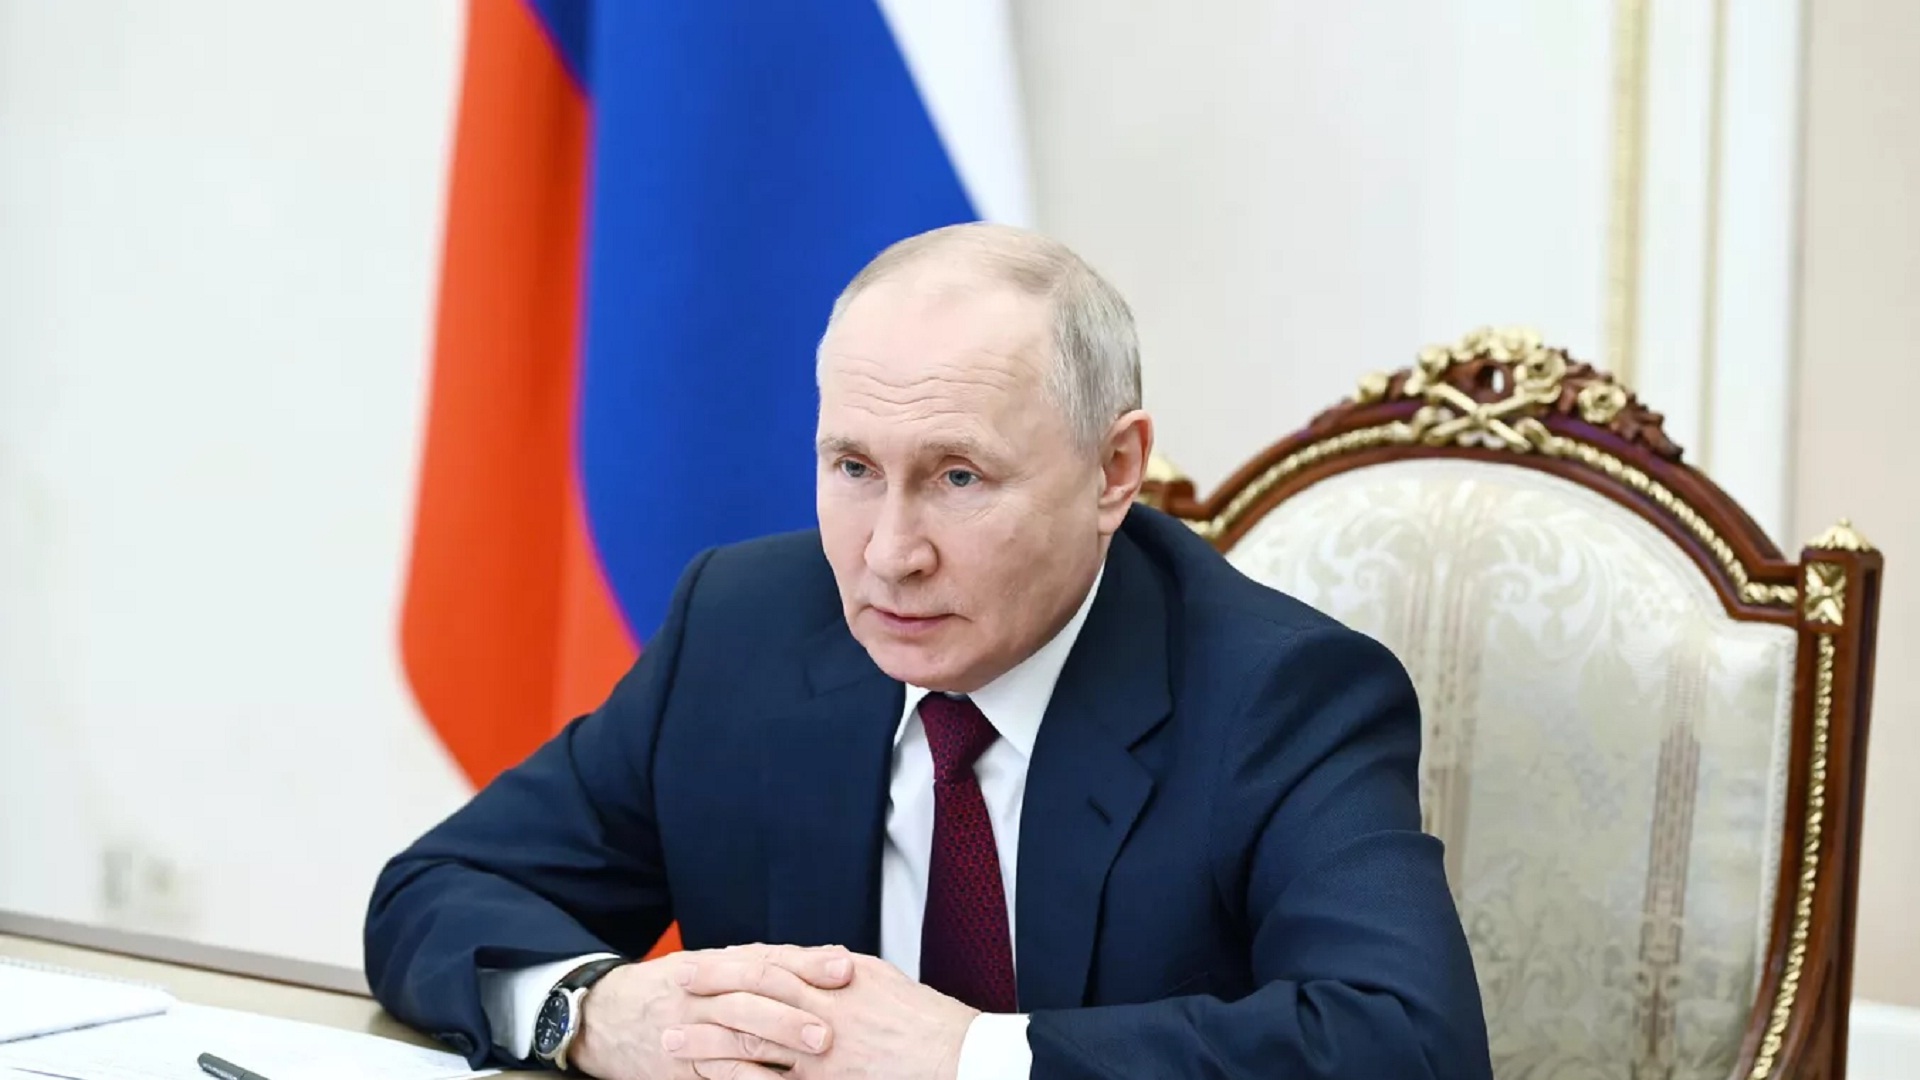 Πούτιν: Σε νέο υψηλό οι σινορωσικές σχέσεις